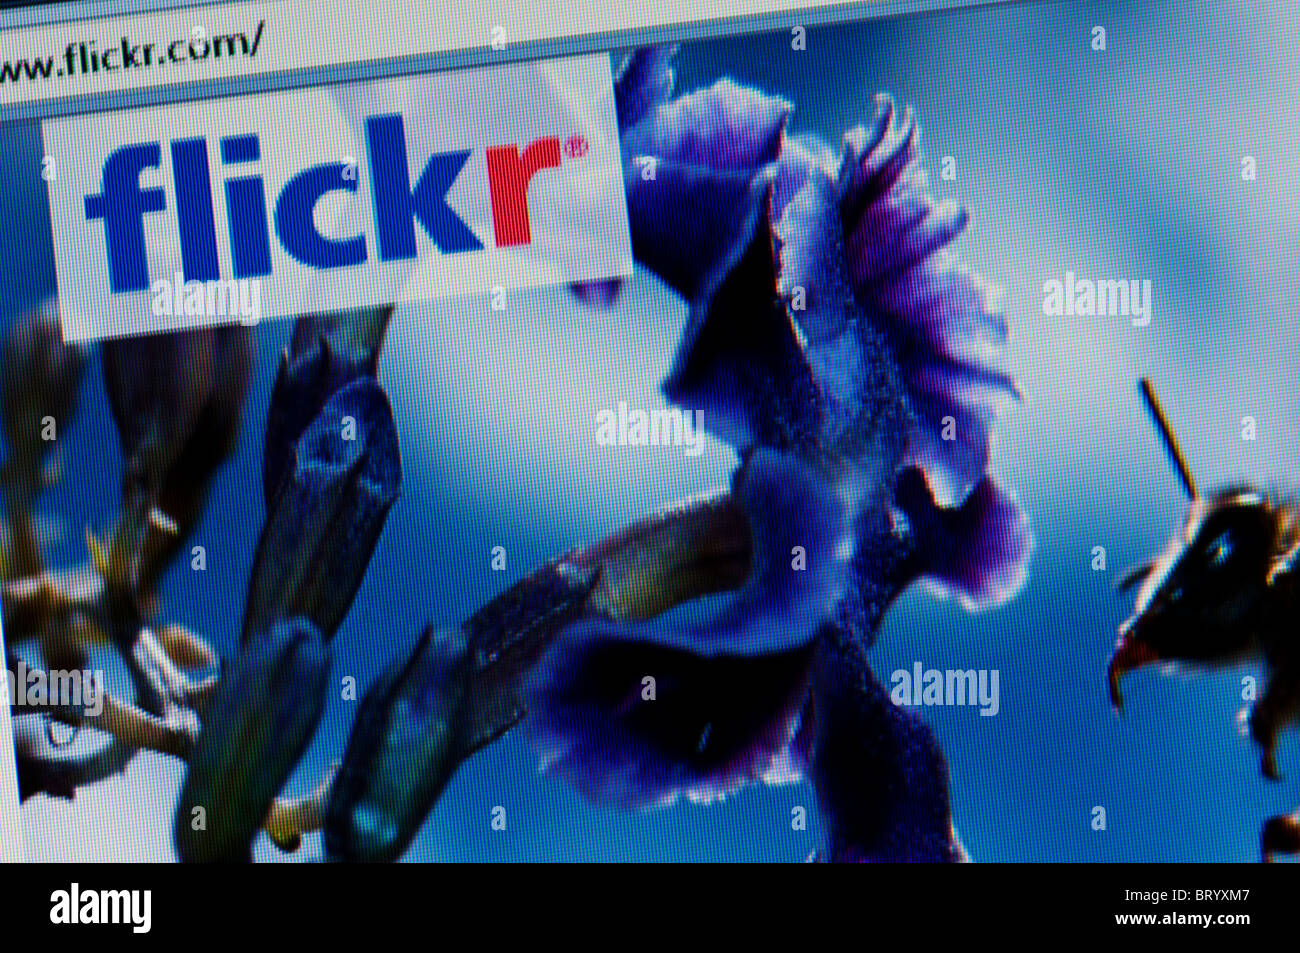 flickr website screen shot Stock Photo